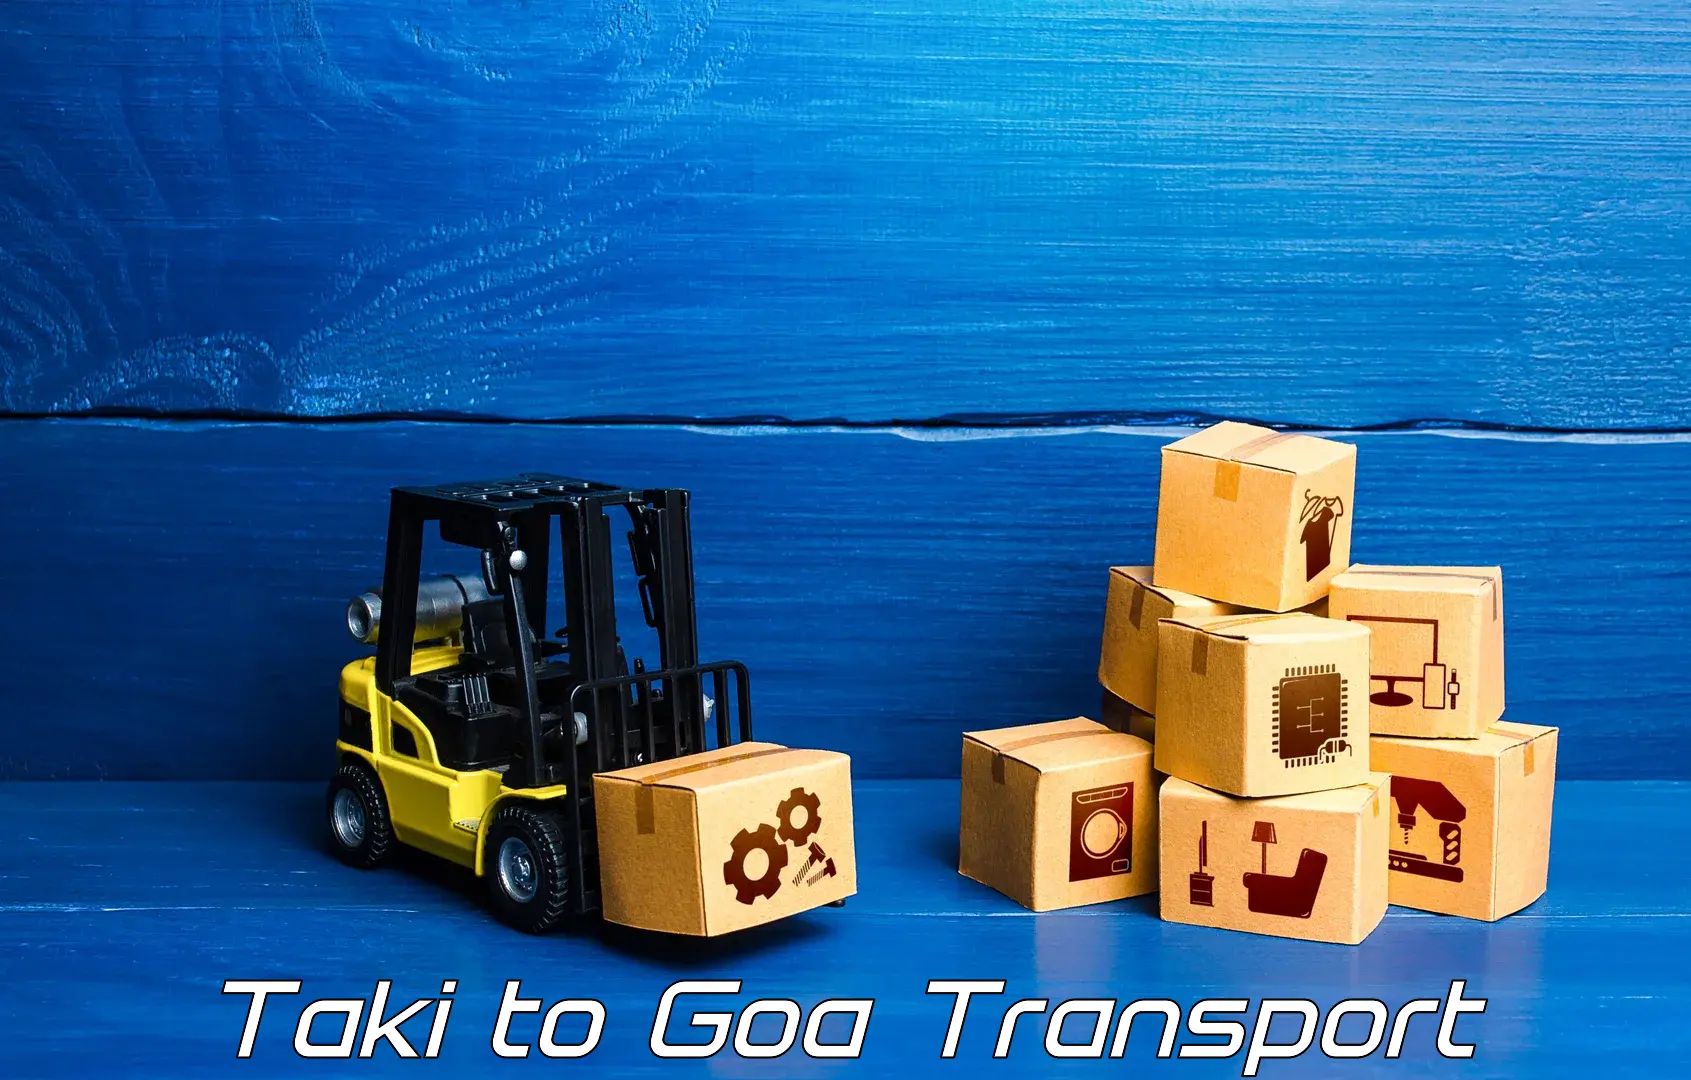 Two wheeler parcel service Taki to Goa